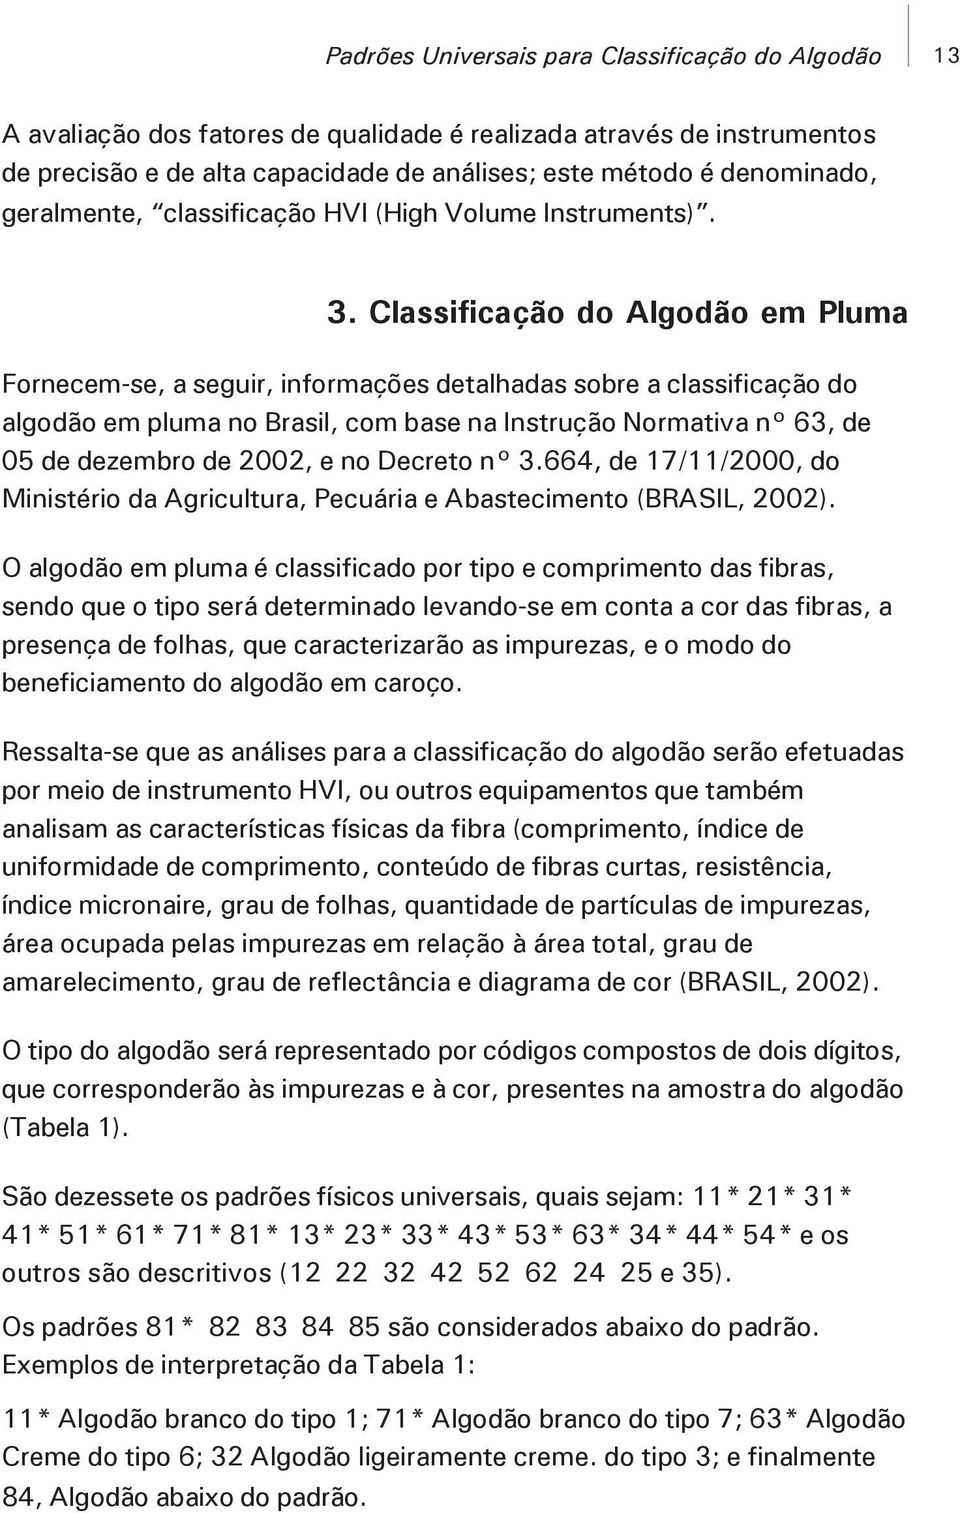 Classificação do Algodão em Pluma Fornecem-se, a seguir, informações detalhadas sobre a classificação do algodão em pluma no Brasil, com base na Instrução Normativa n 63, de 05 de dezembro de 2002, e